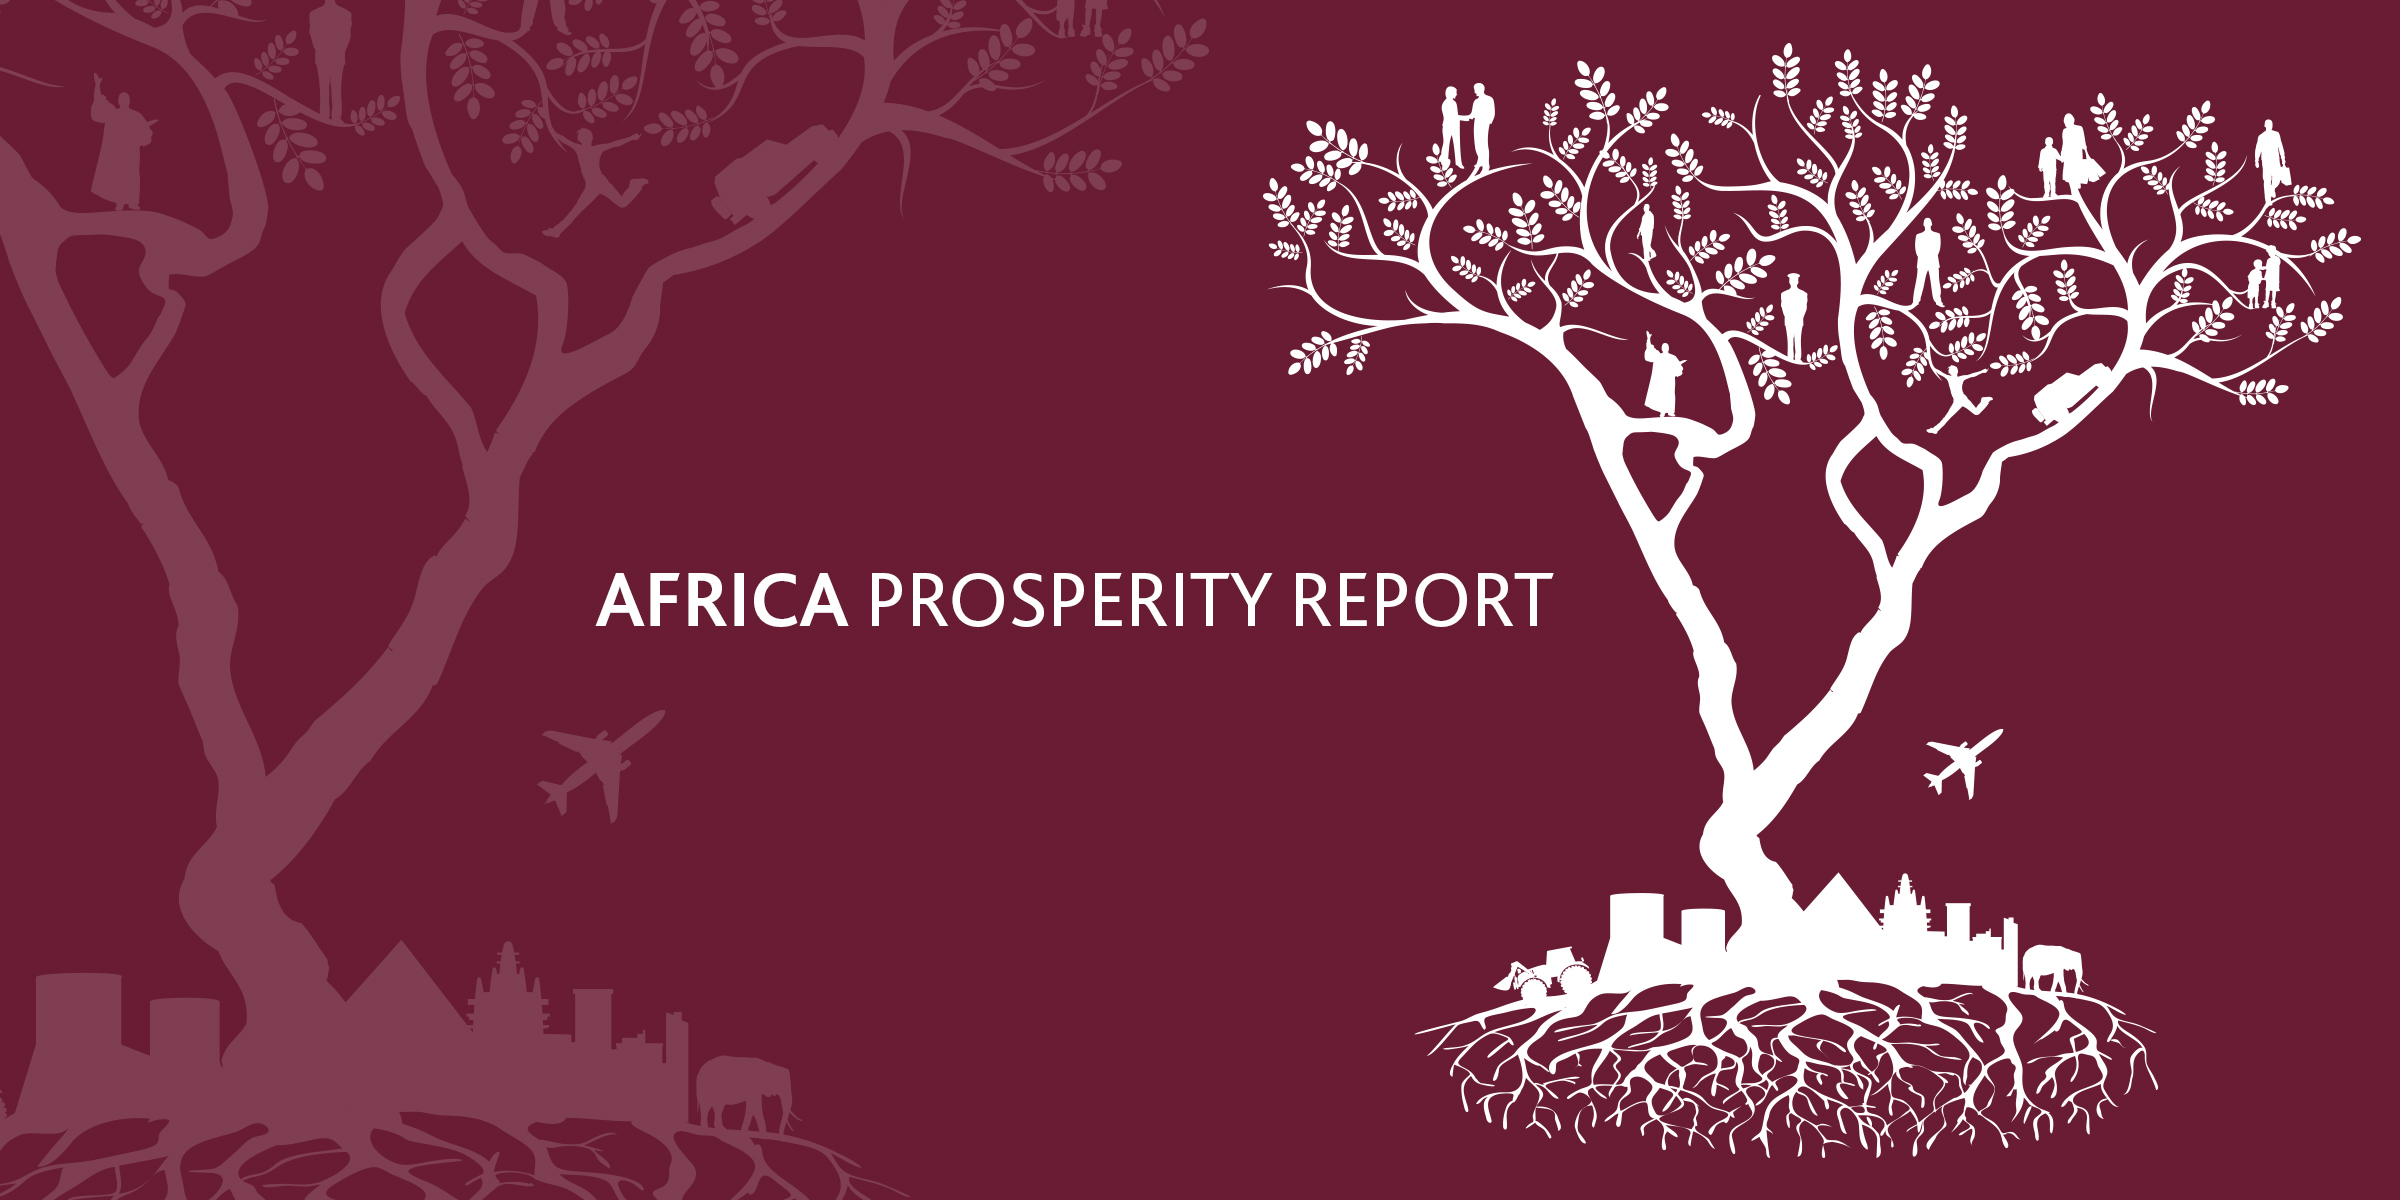 Africa prosperity report 2016: Le Sénégal classé 7ème pays africain le plus prospère